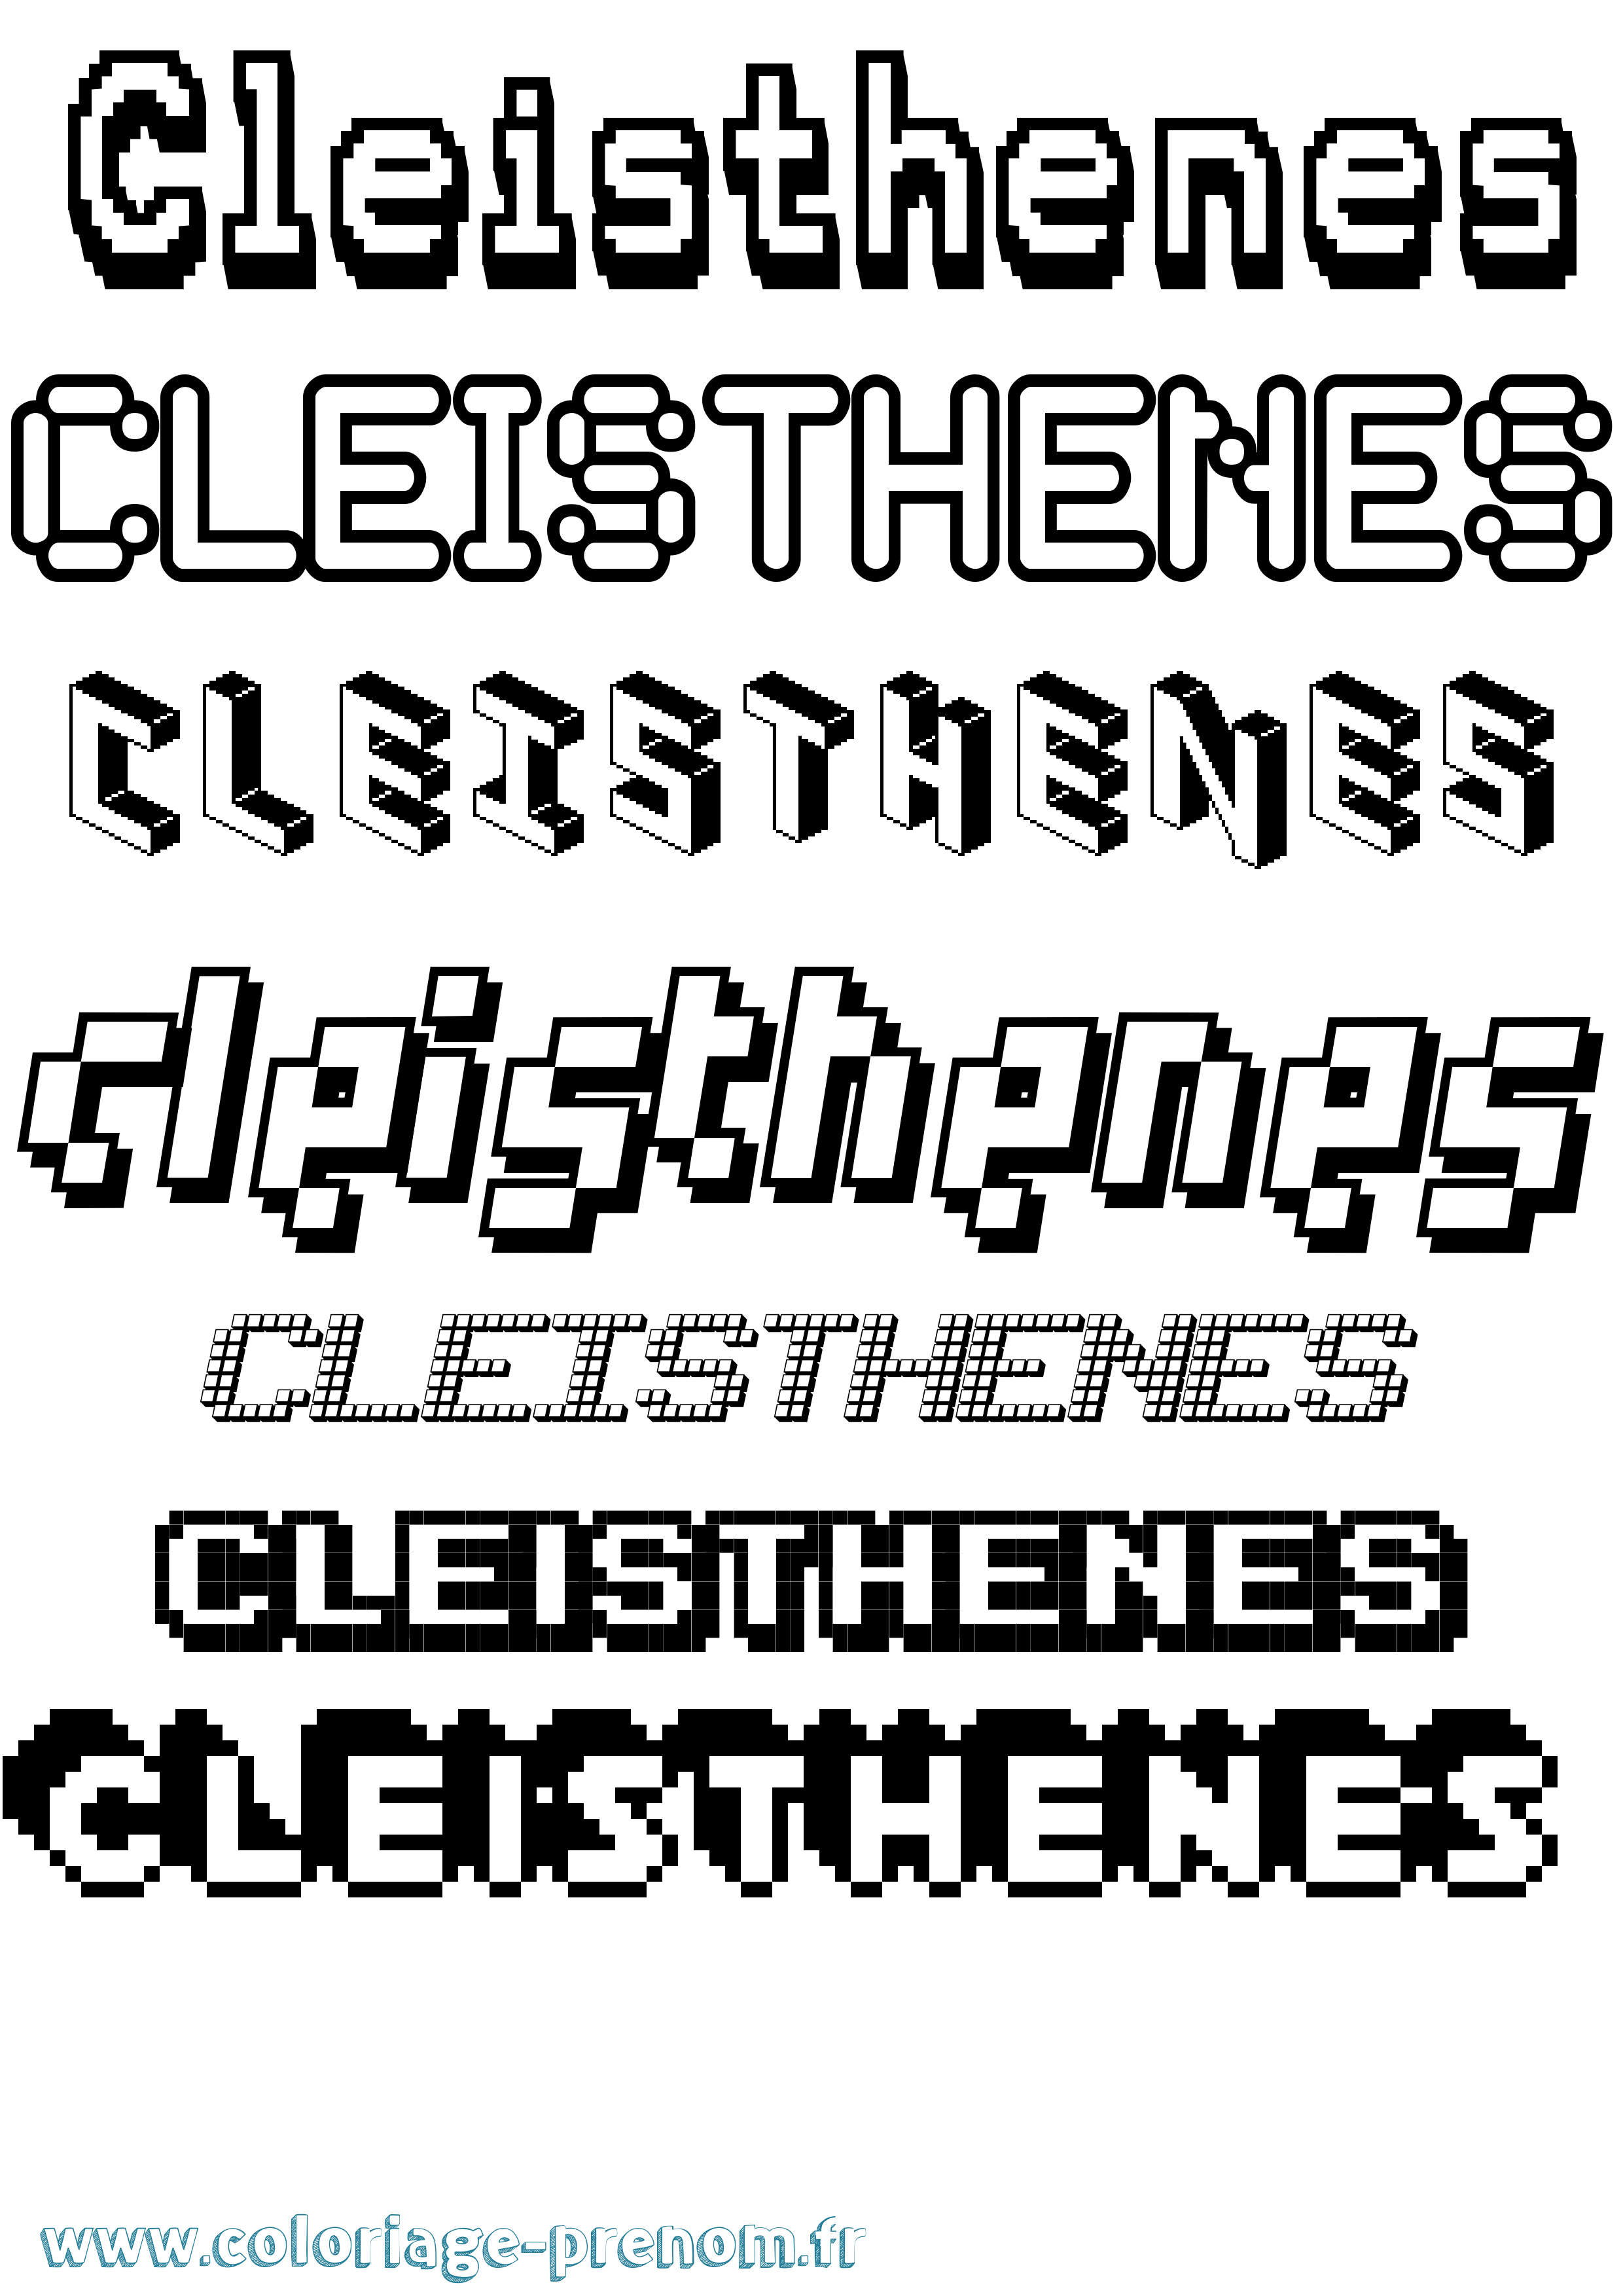 Coloriage prénom Cleisthenes Pixel